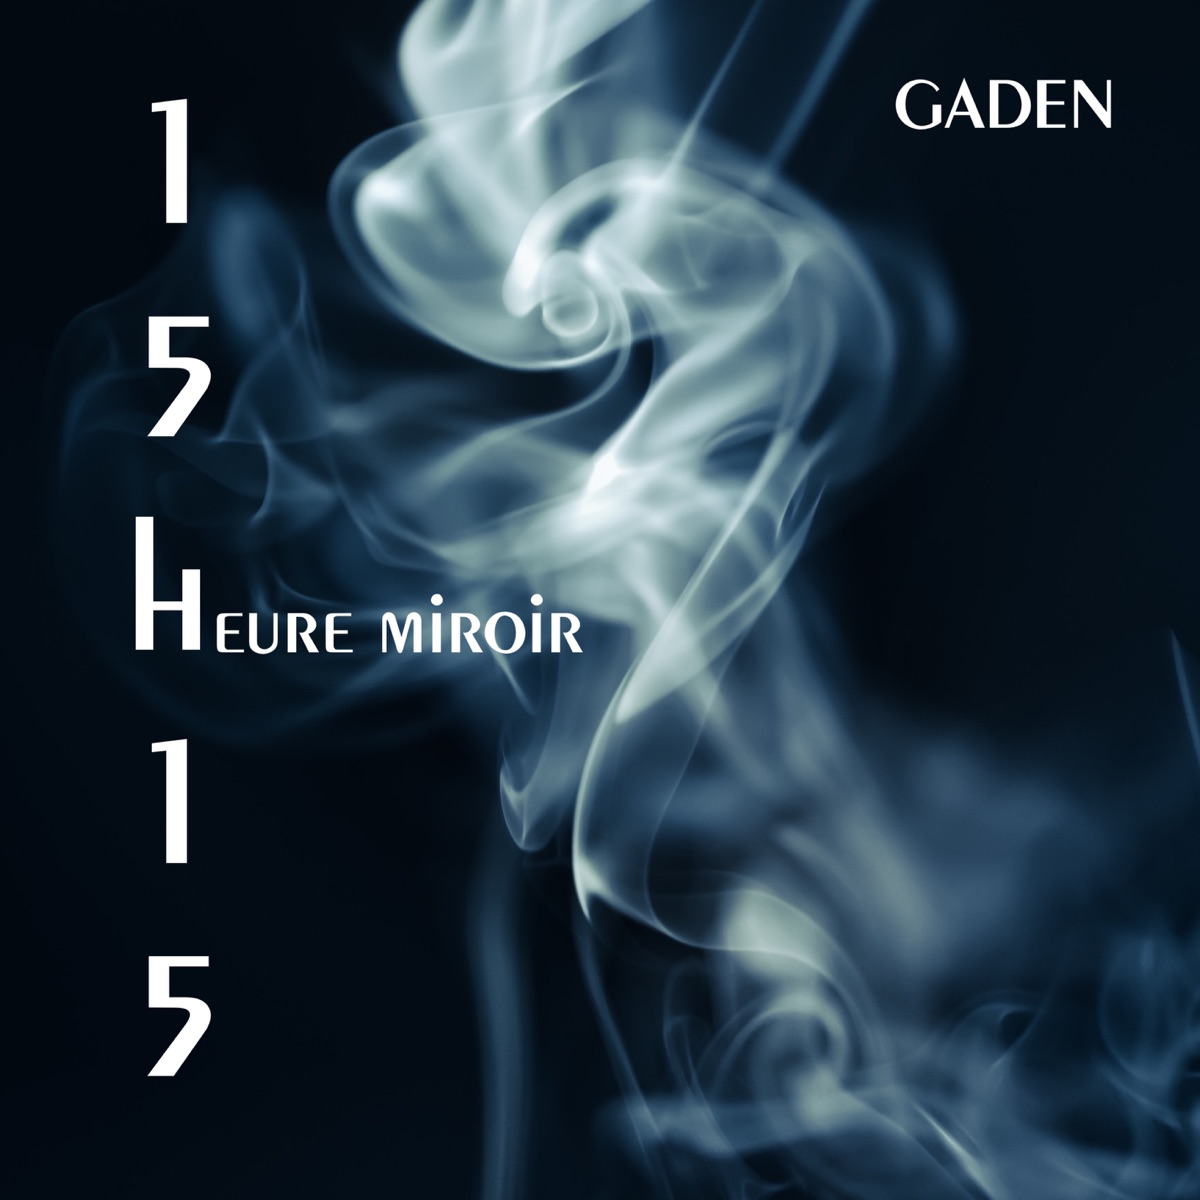 15h15 (heure miroir) - Single par Gaden sur Apple Music